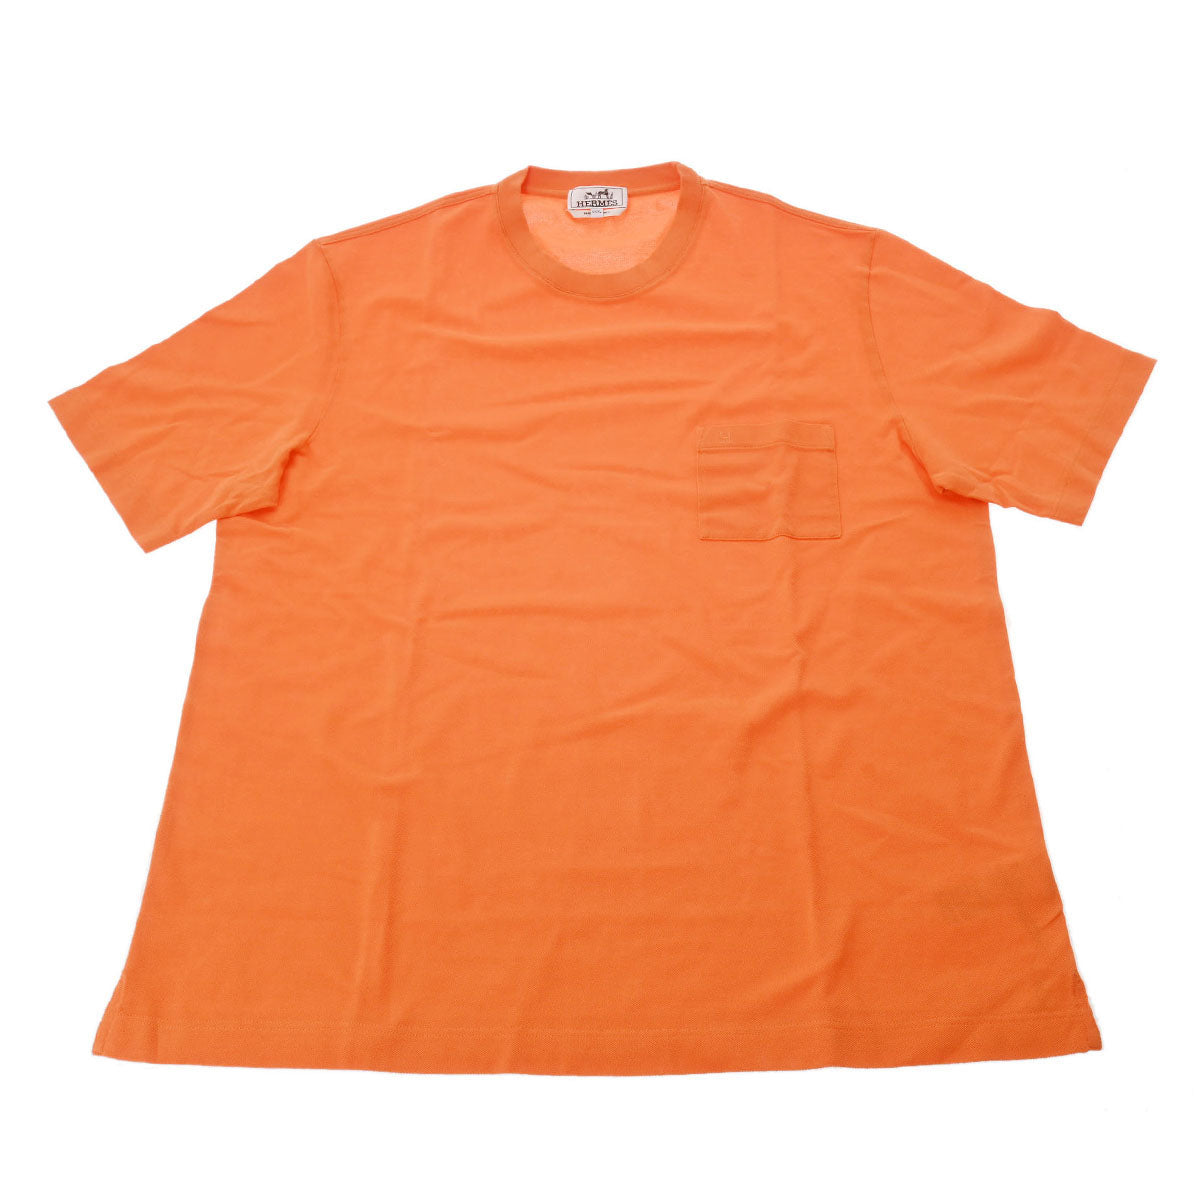 トップスエルメス 半袖Tシャツ メンズ サイズXXL 海外エルメスソルド購入品